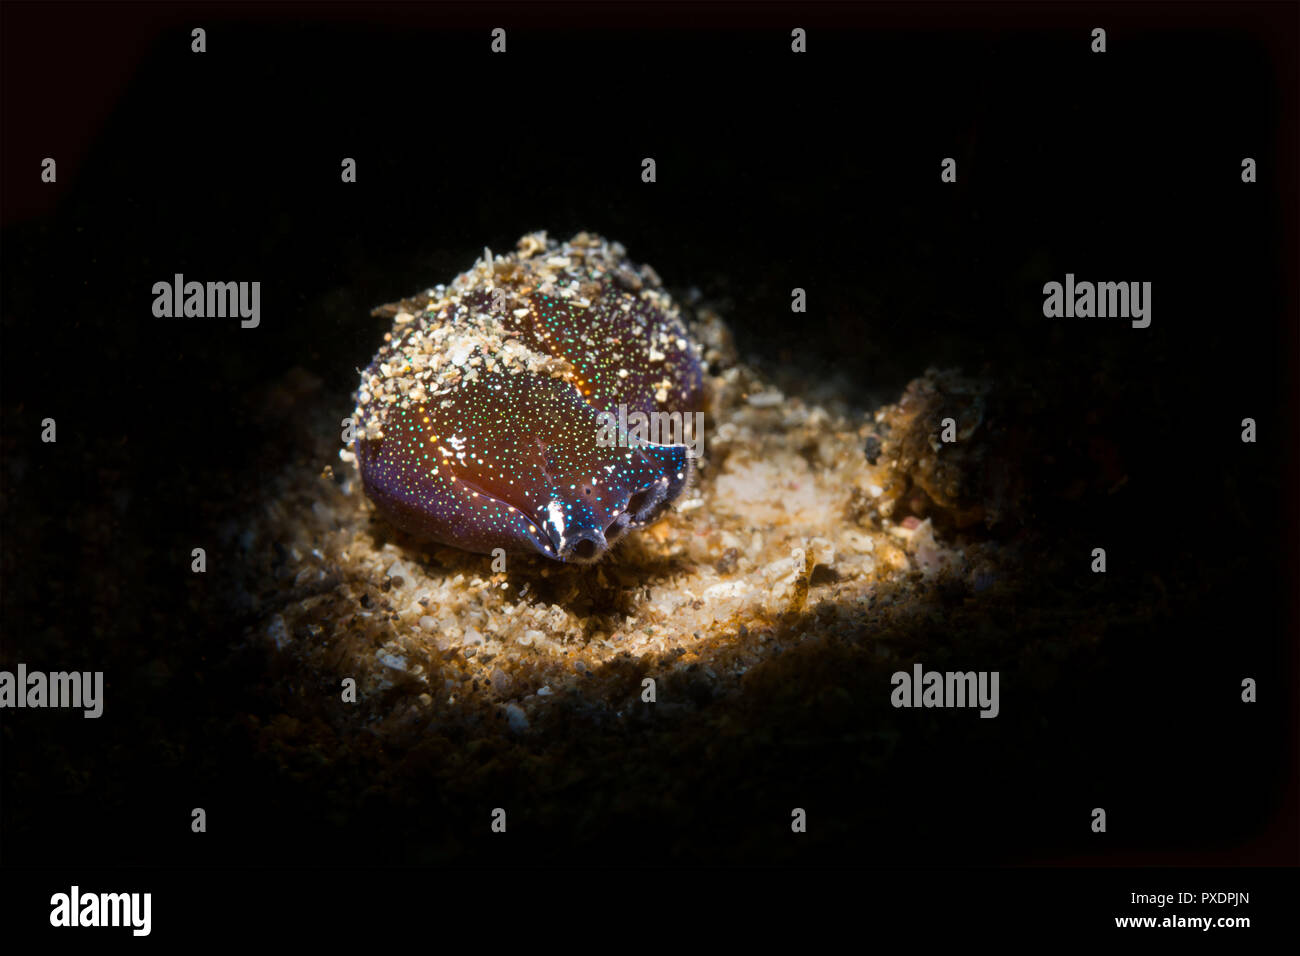 Un giunto viscoso nudibranch subacquea crawl lumaca lungo il fondo sabbioso in cerca di prede. Colpo utilizzando un particolare fascio di luce snoot. Foto Stock